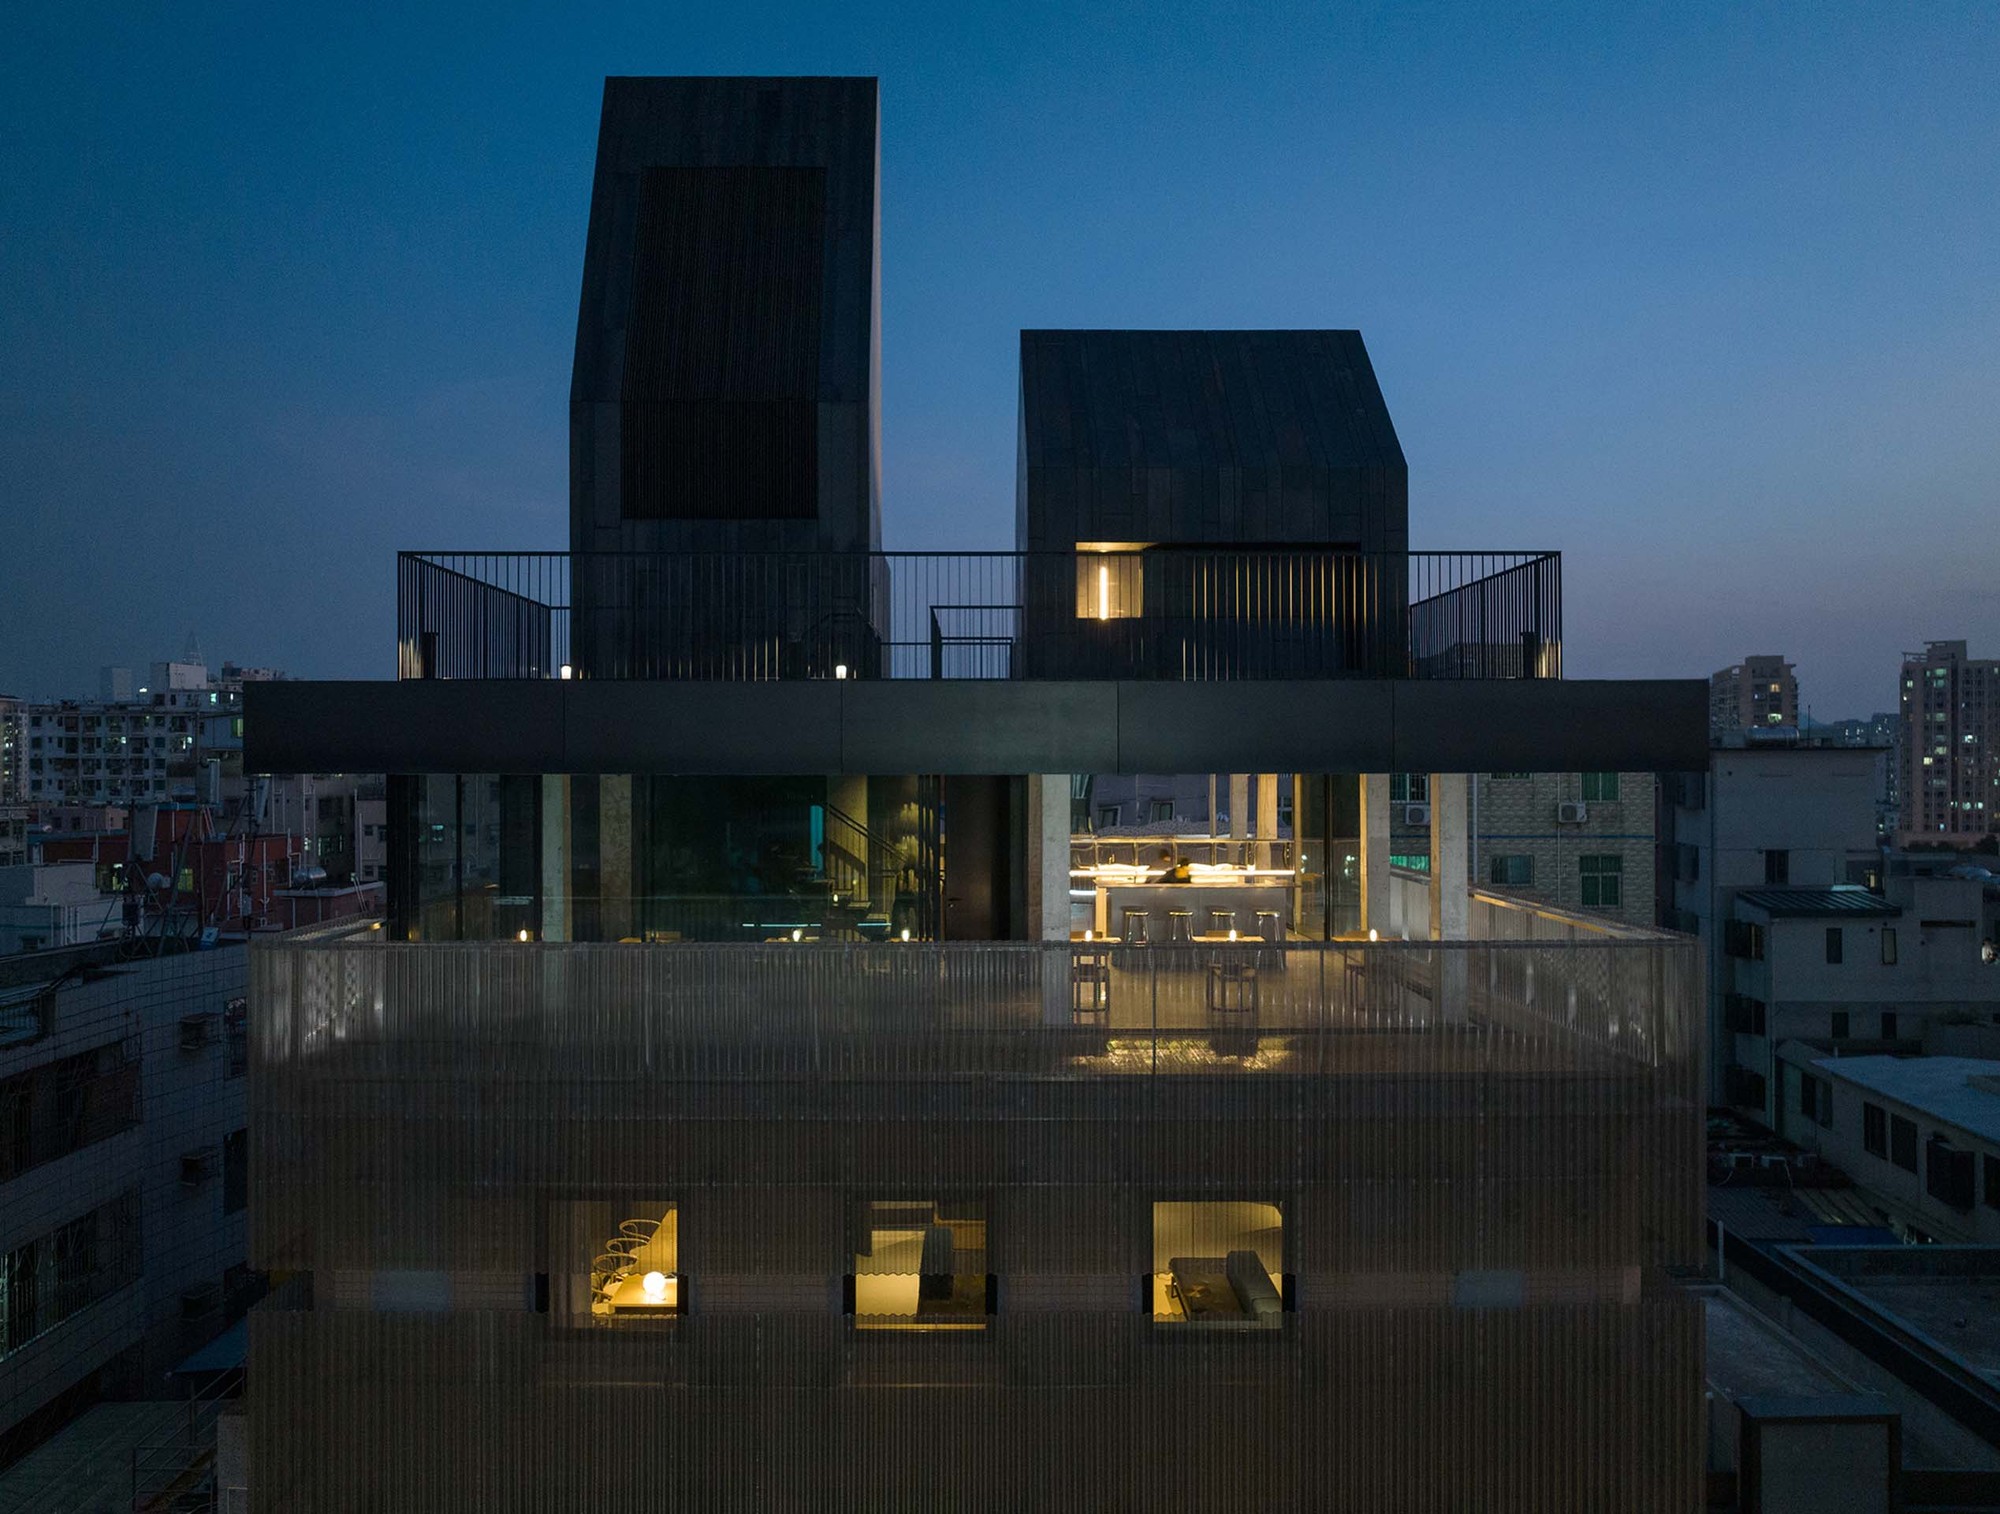 深圳南头古城有熊酒店 / 如恩设计研究室|ART-Arrakis | 建筑室内设计的创新与灵感